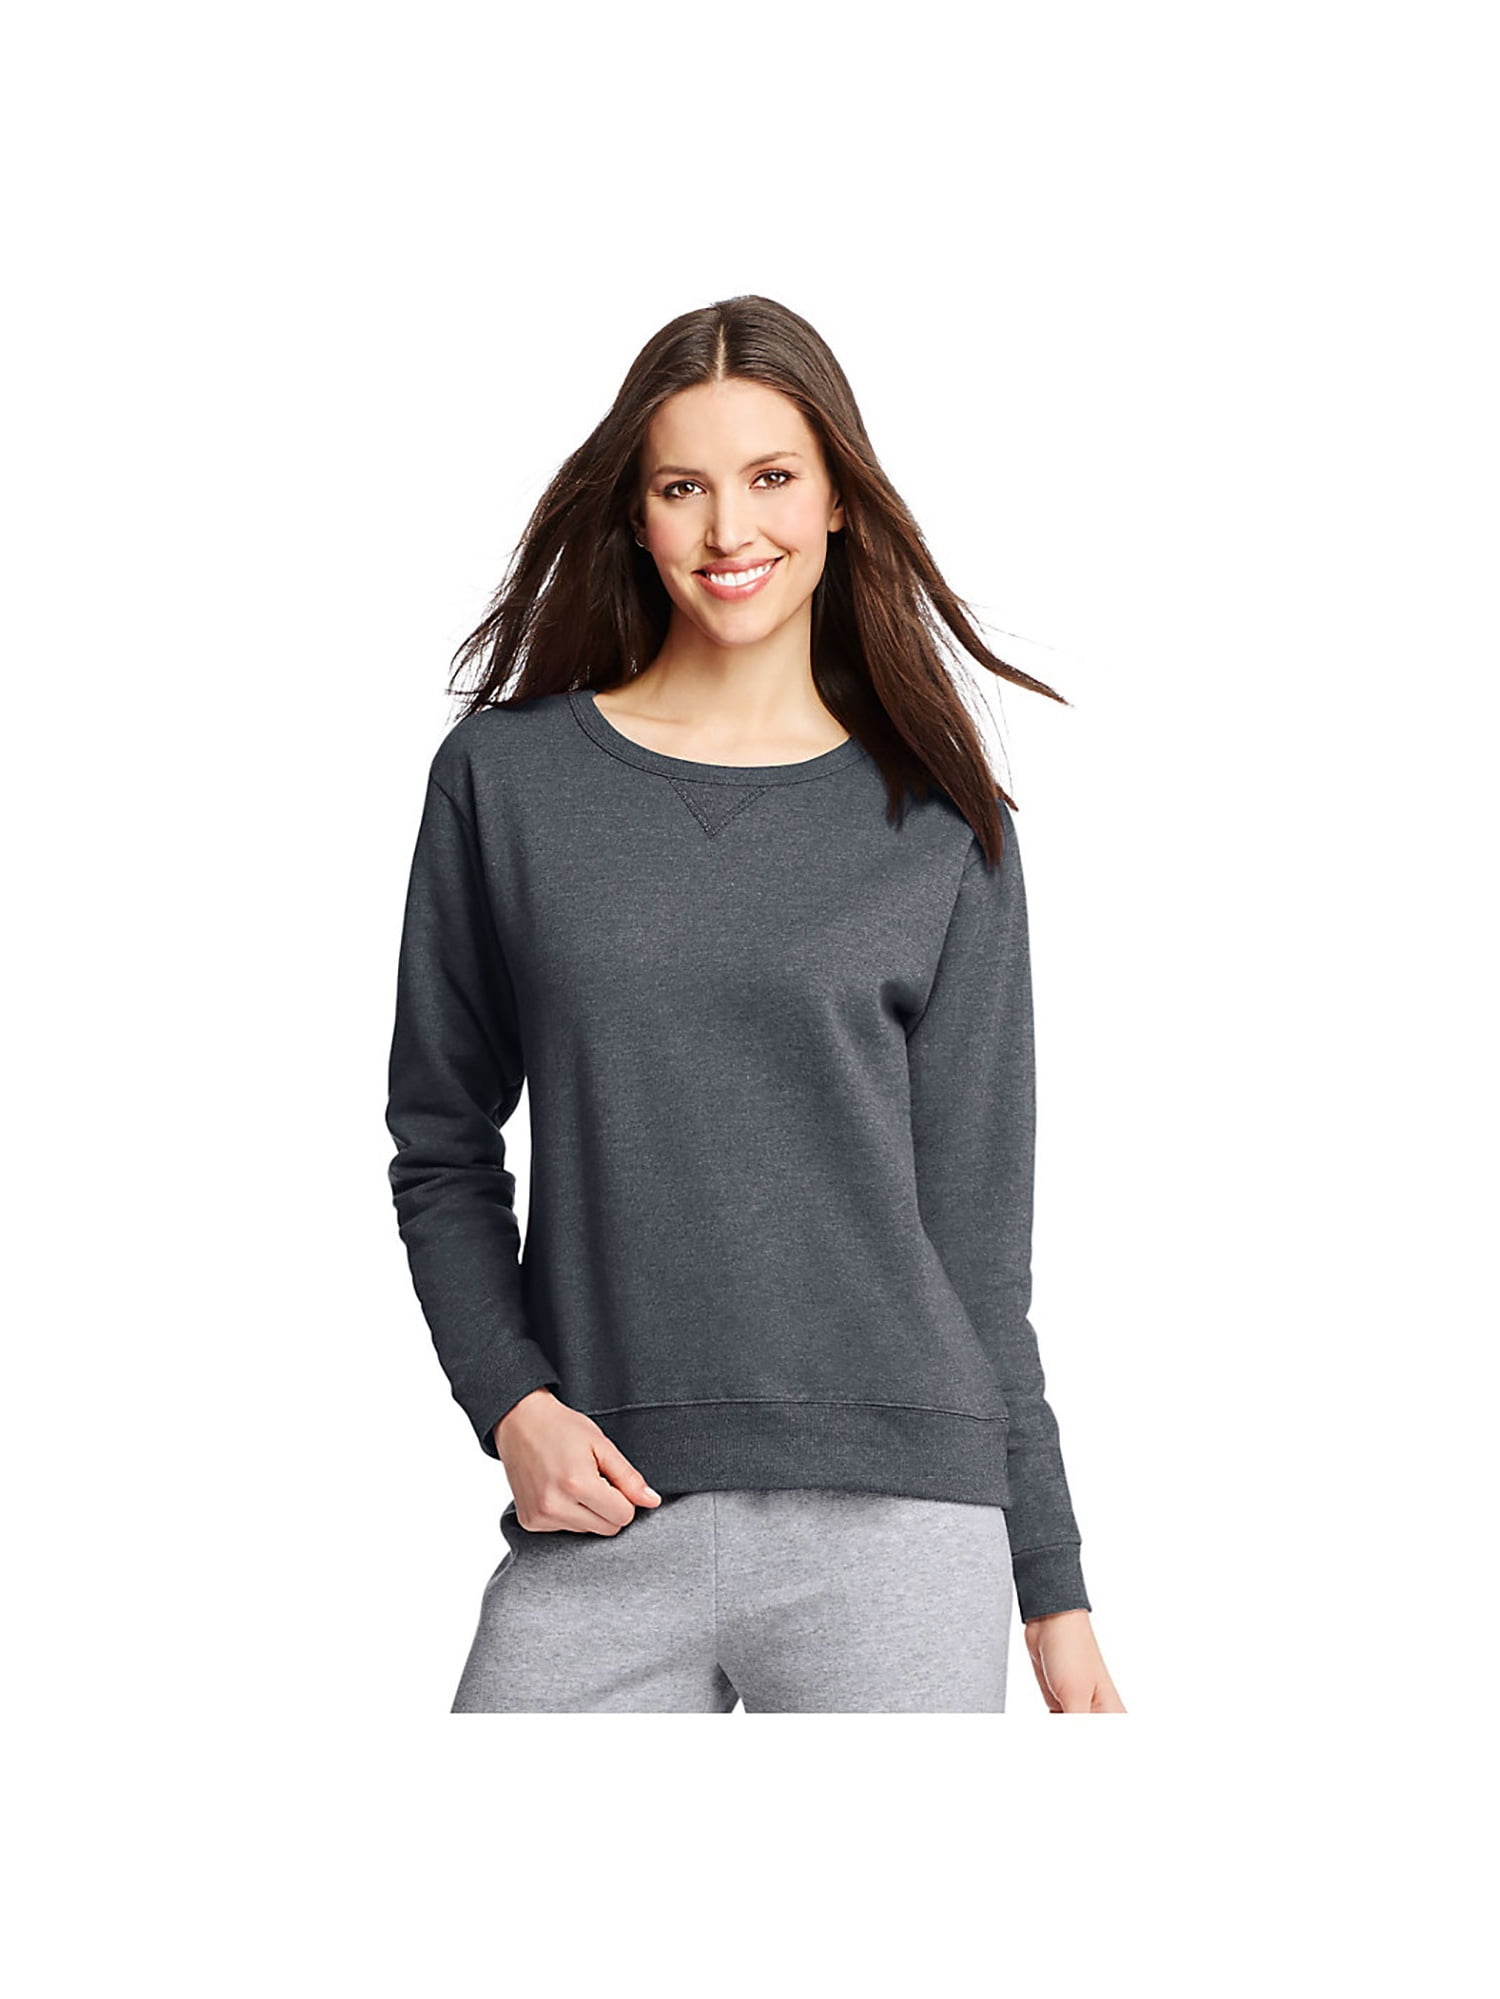 Hanes - Hanes Women's Crewneck Sweatshirt, Style O4633 - Walmart.com ...